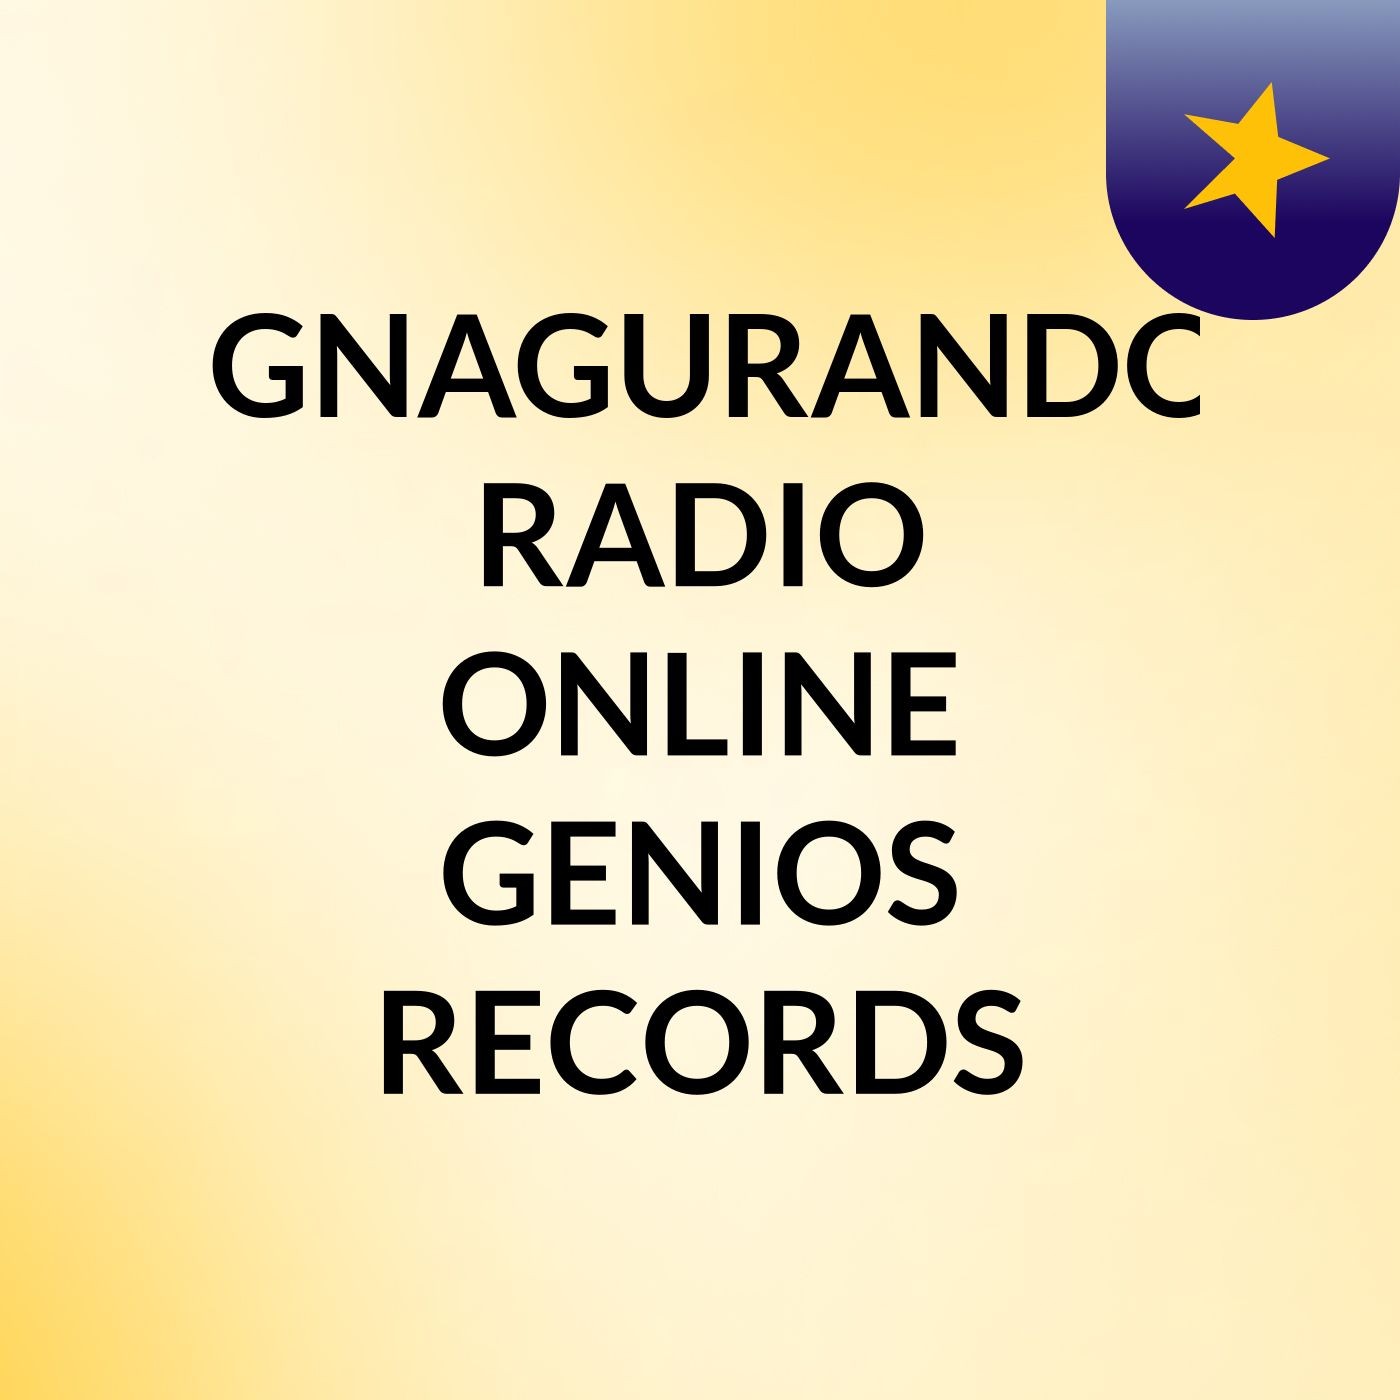 IGNAGURANDO RADIO ONLINE GENIOS RECORDS